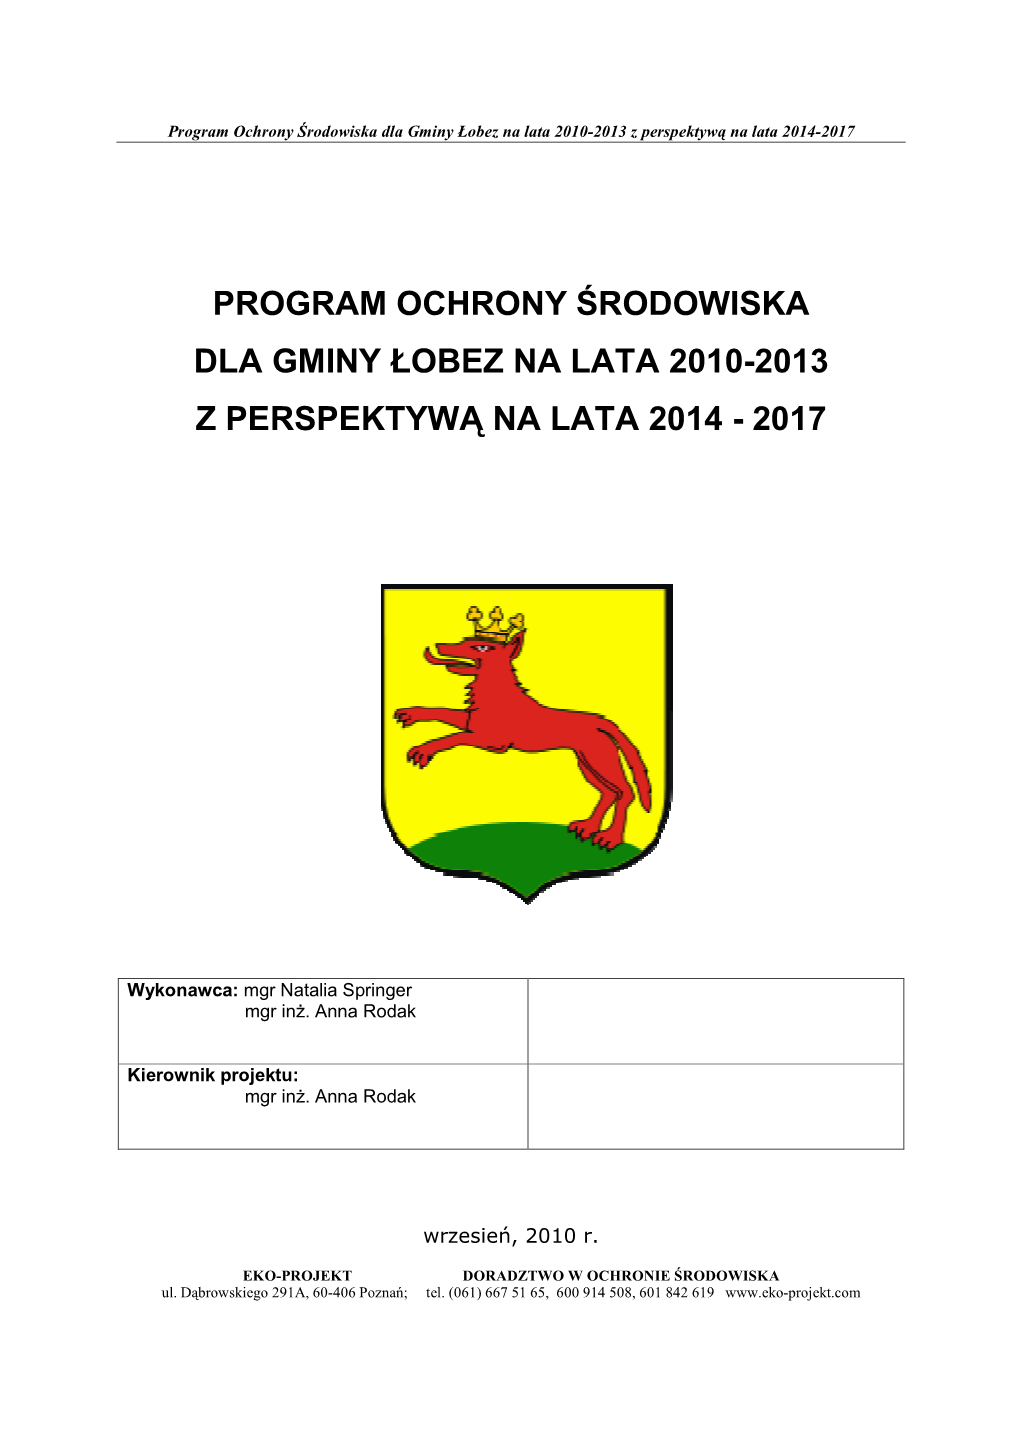 Program Ochrony Środowiska Dla Gminy Łobez Na Lata 2010-2013 Z Perspektyw Ą Na Lata 2014-2017